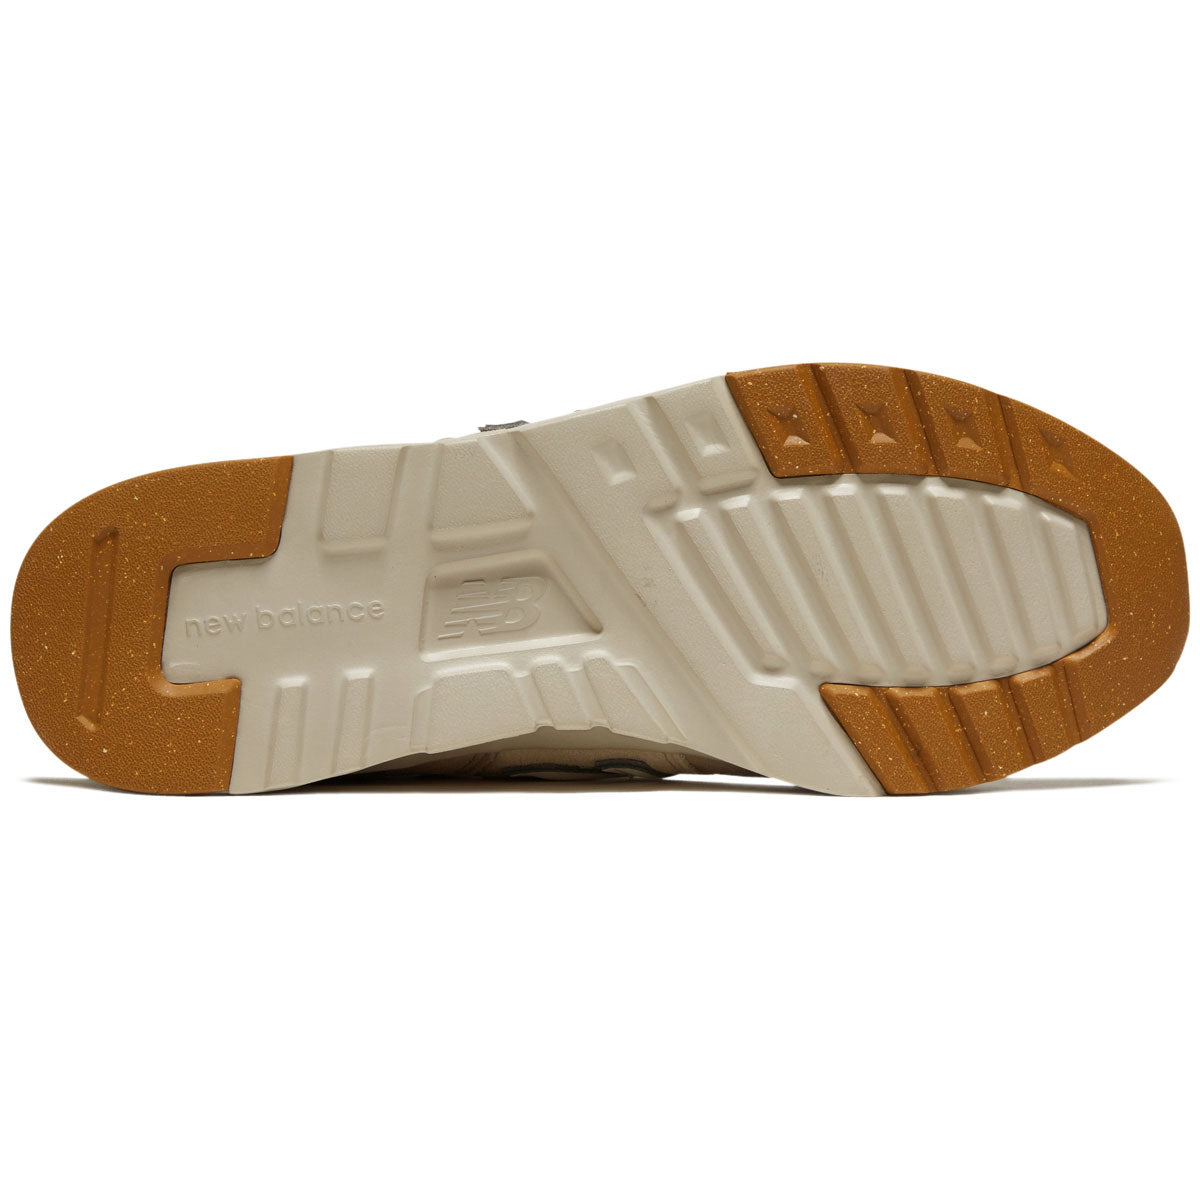 New Balance 997H Shoes - Stoneware/Sandstone/Turtledove/New Spruce image 4